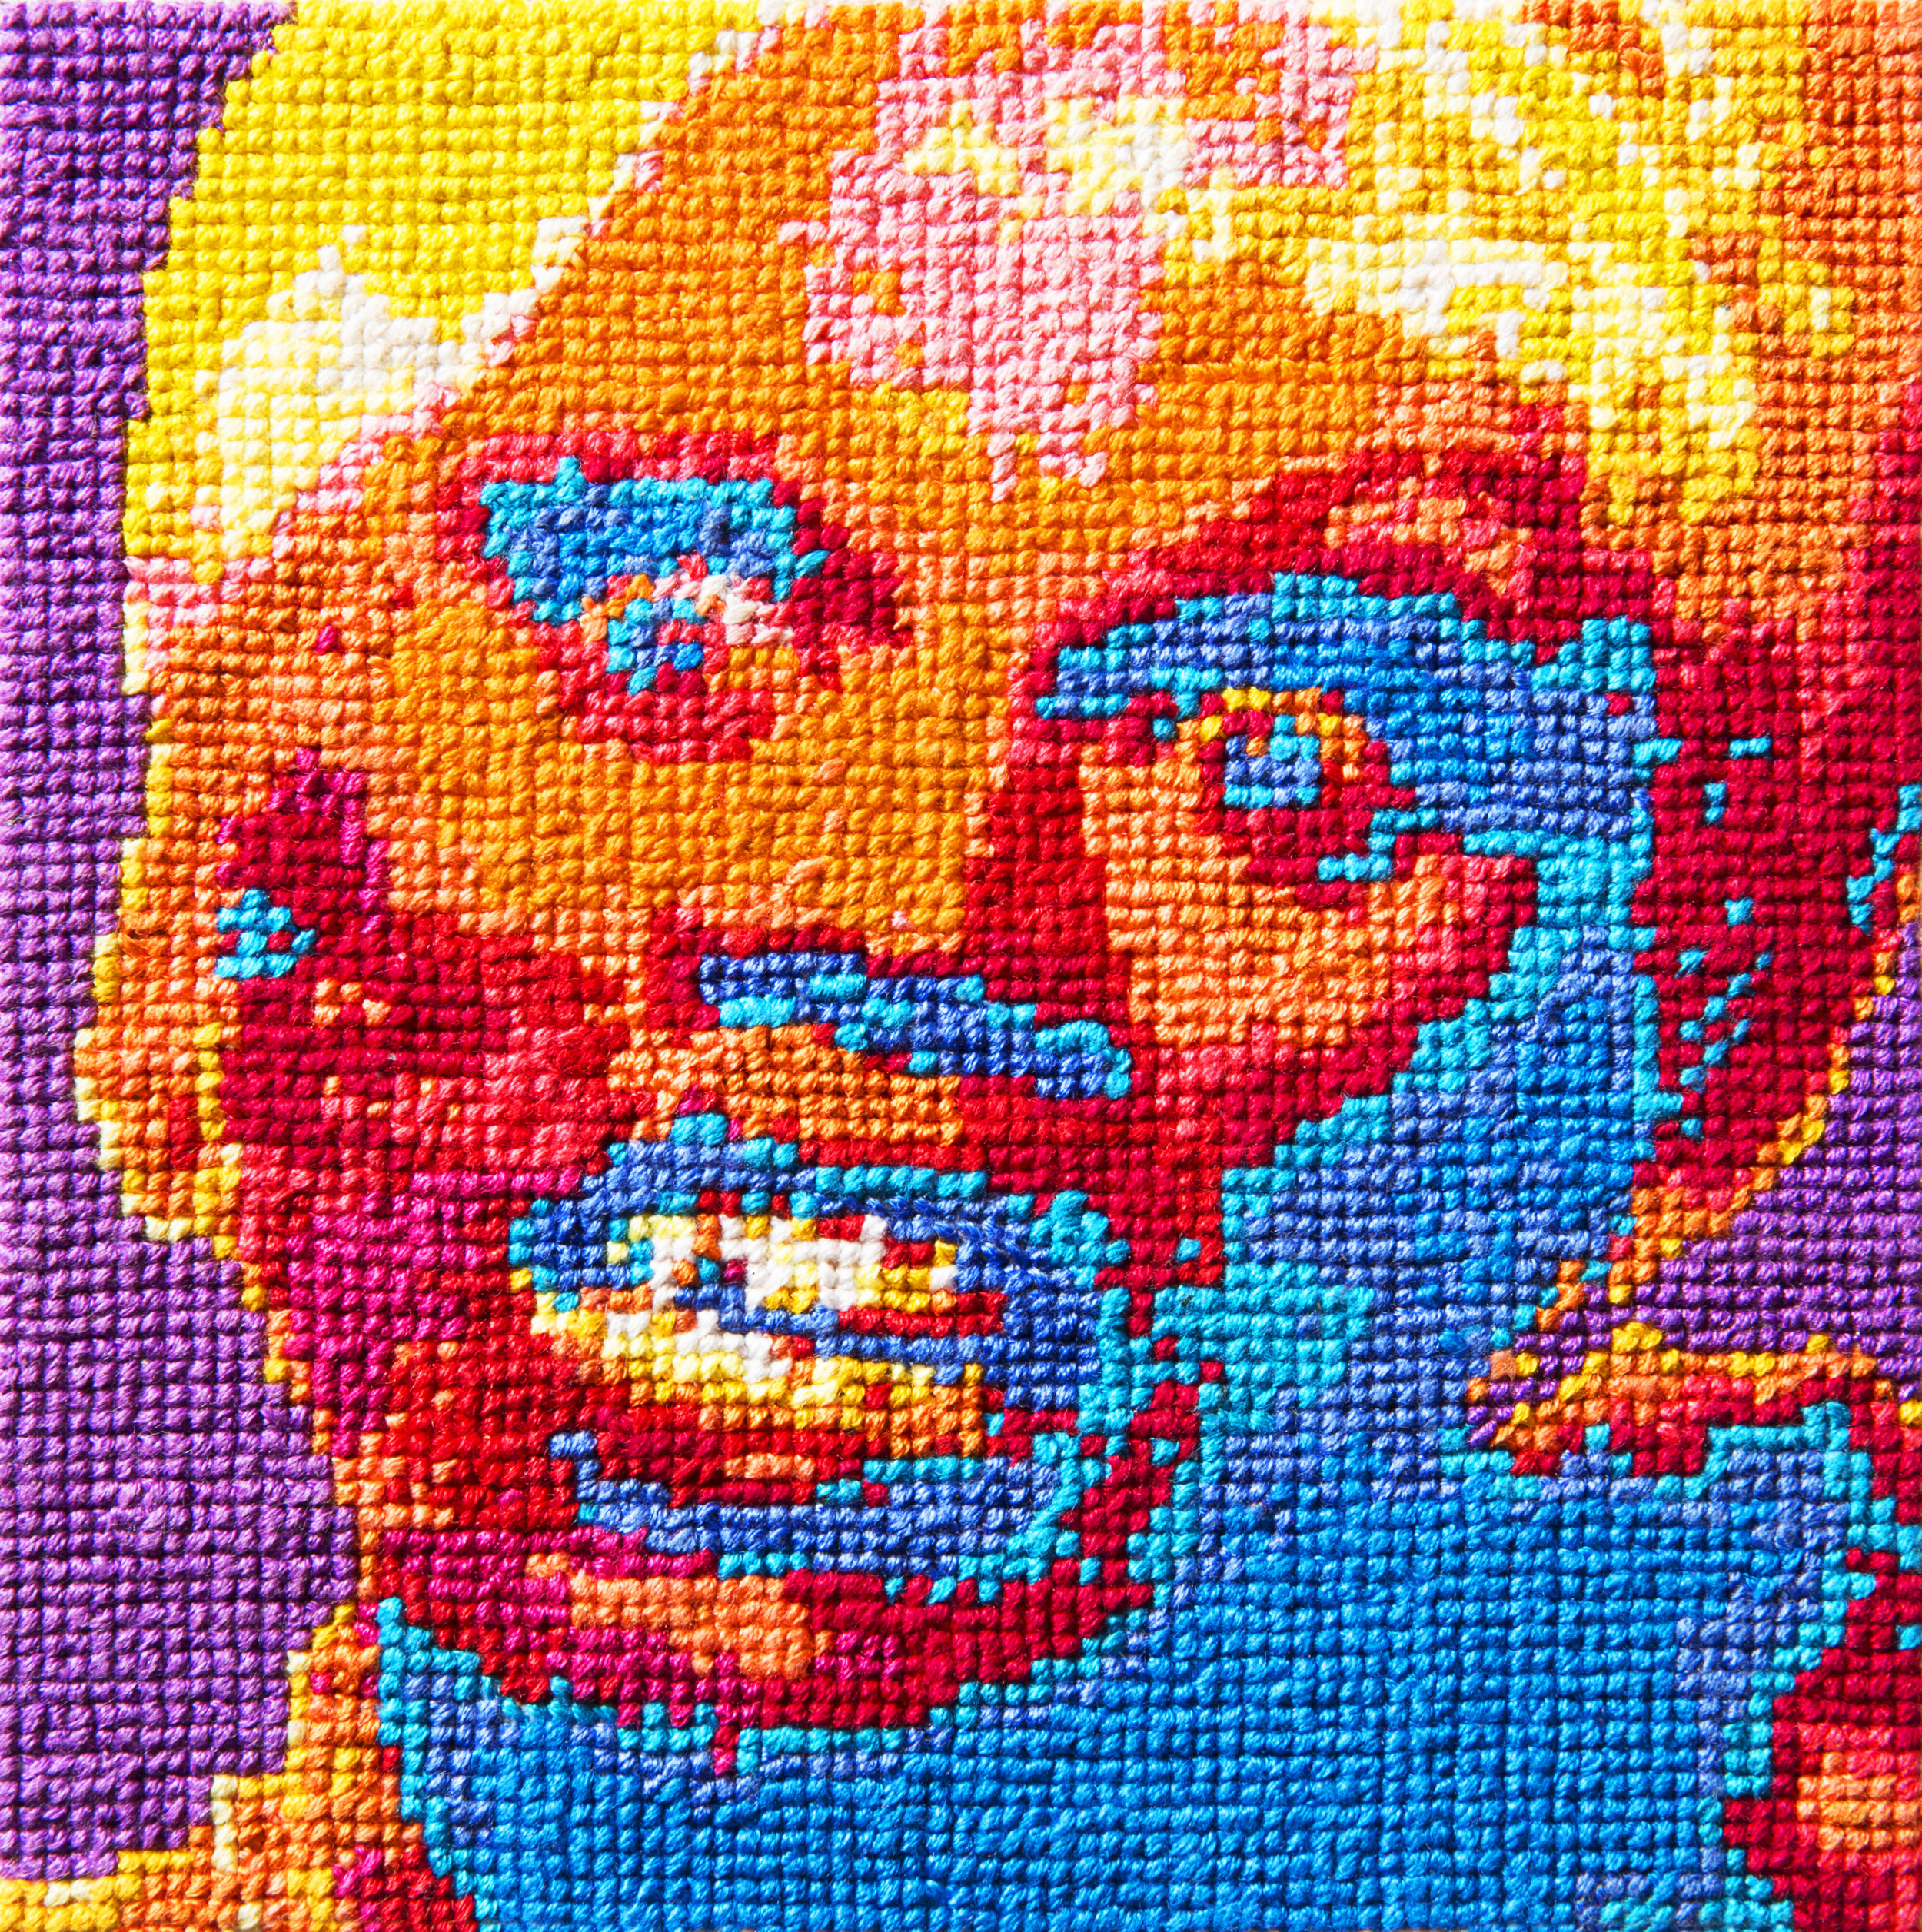   Frame 27   By Jane Foley  5 x 5 inches  Cotton thread on aida cloth  2013 